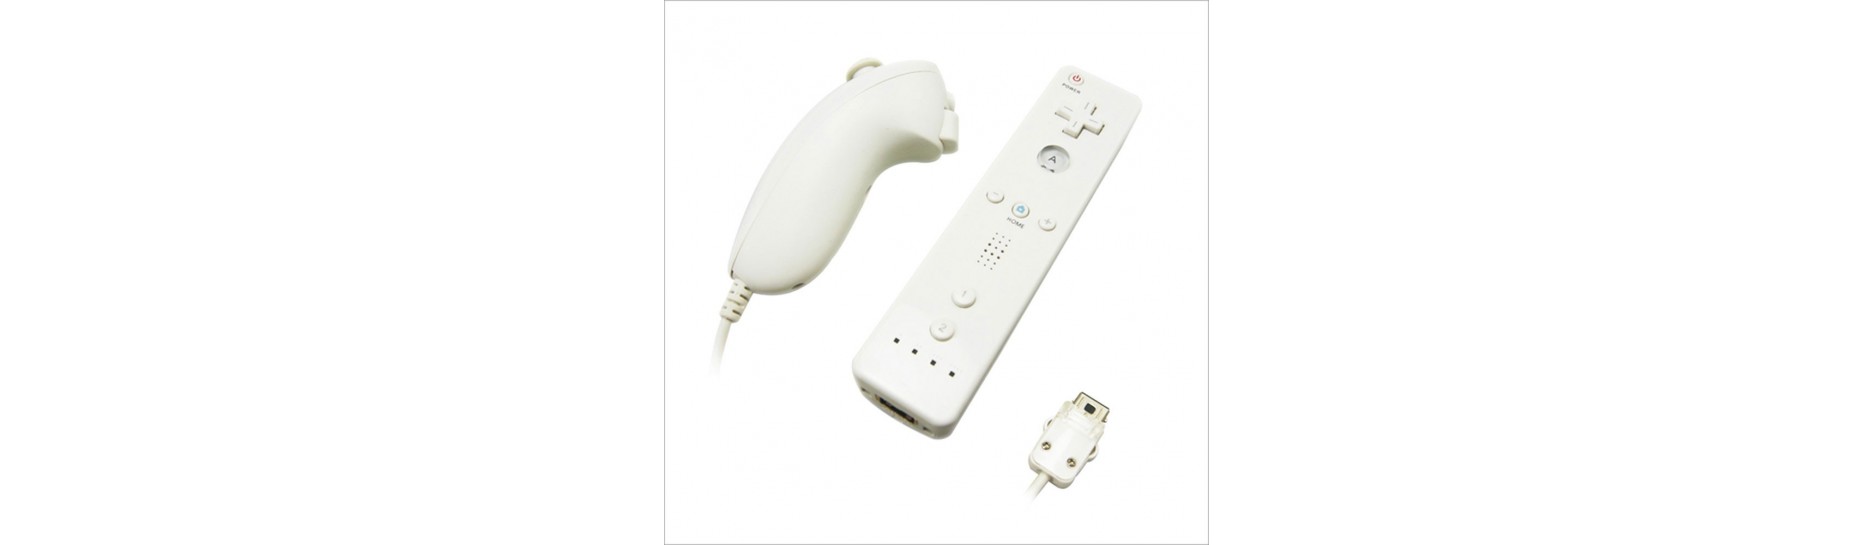 Accesorios Nintendo Wii